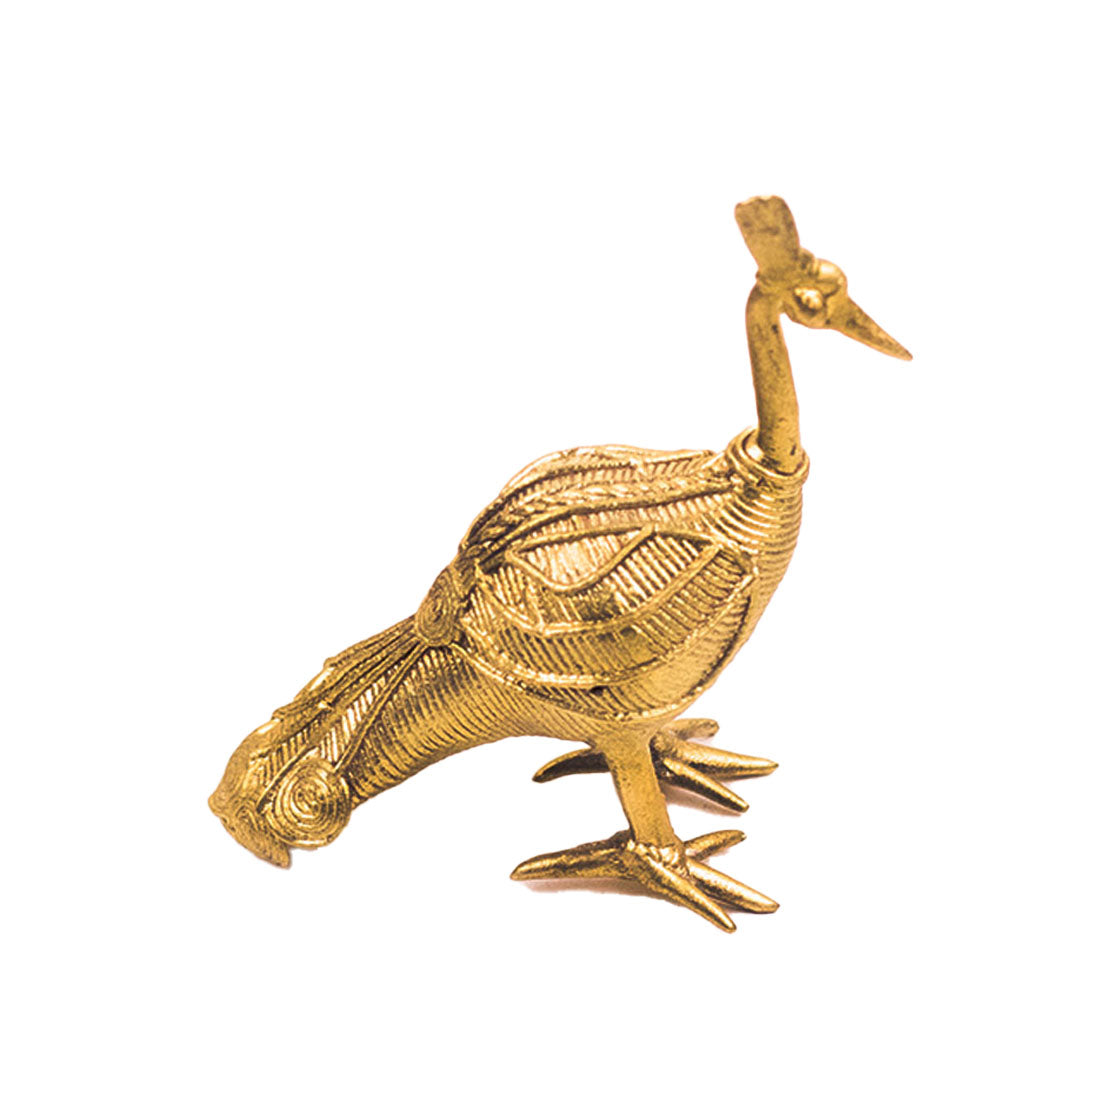 Handmade Golden Peacock Brass Figurine